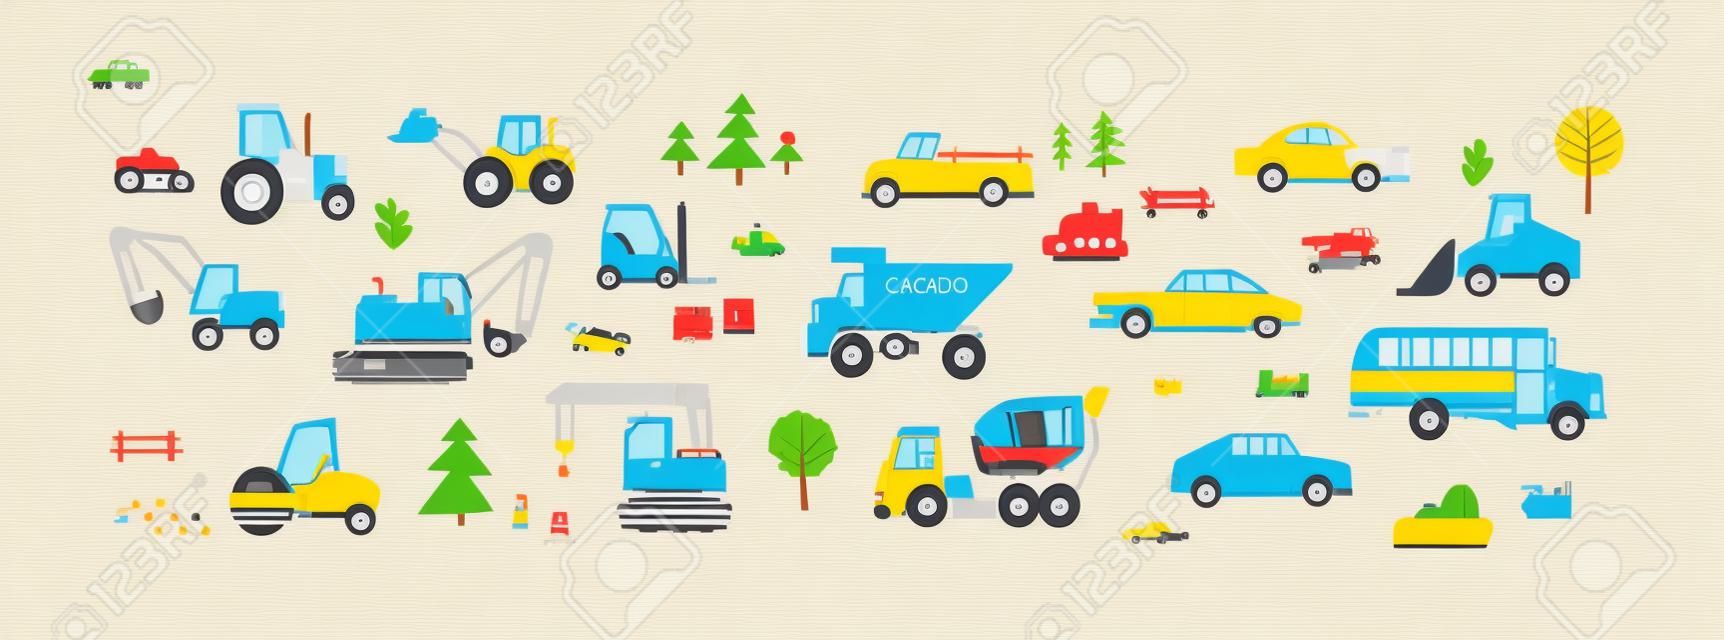 Śliczne samochody w stylu skandynawskim. dziecinny zestaw zabawek do transportu drogowego. traktor, autobus, wywrotka, koparka, wózek widłowy, taksówka i pickup. kolorowe płaskie ilustracje wektorowe izolowane na białym tle